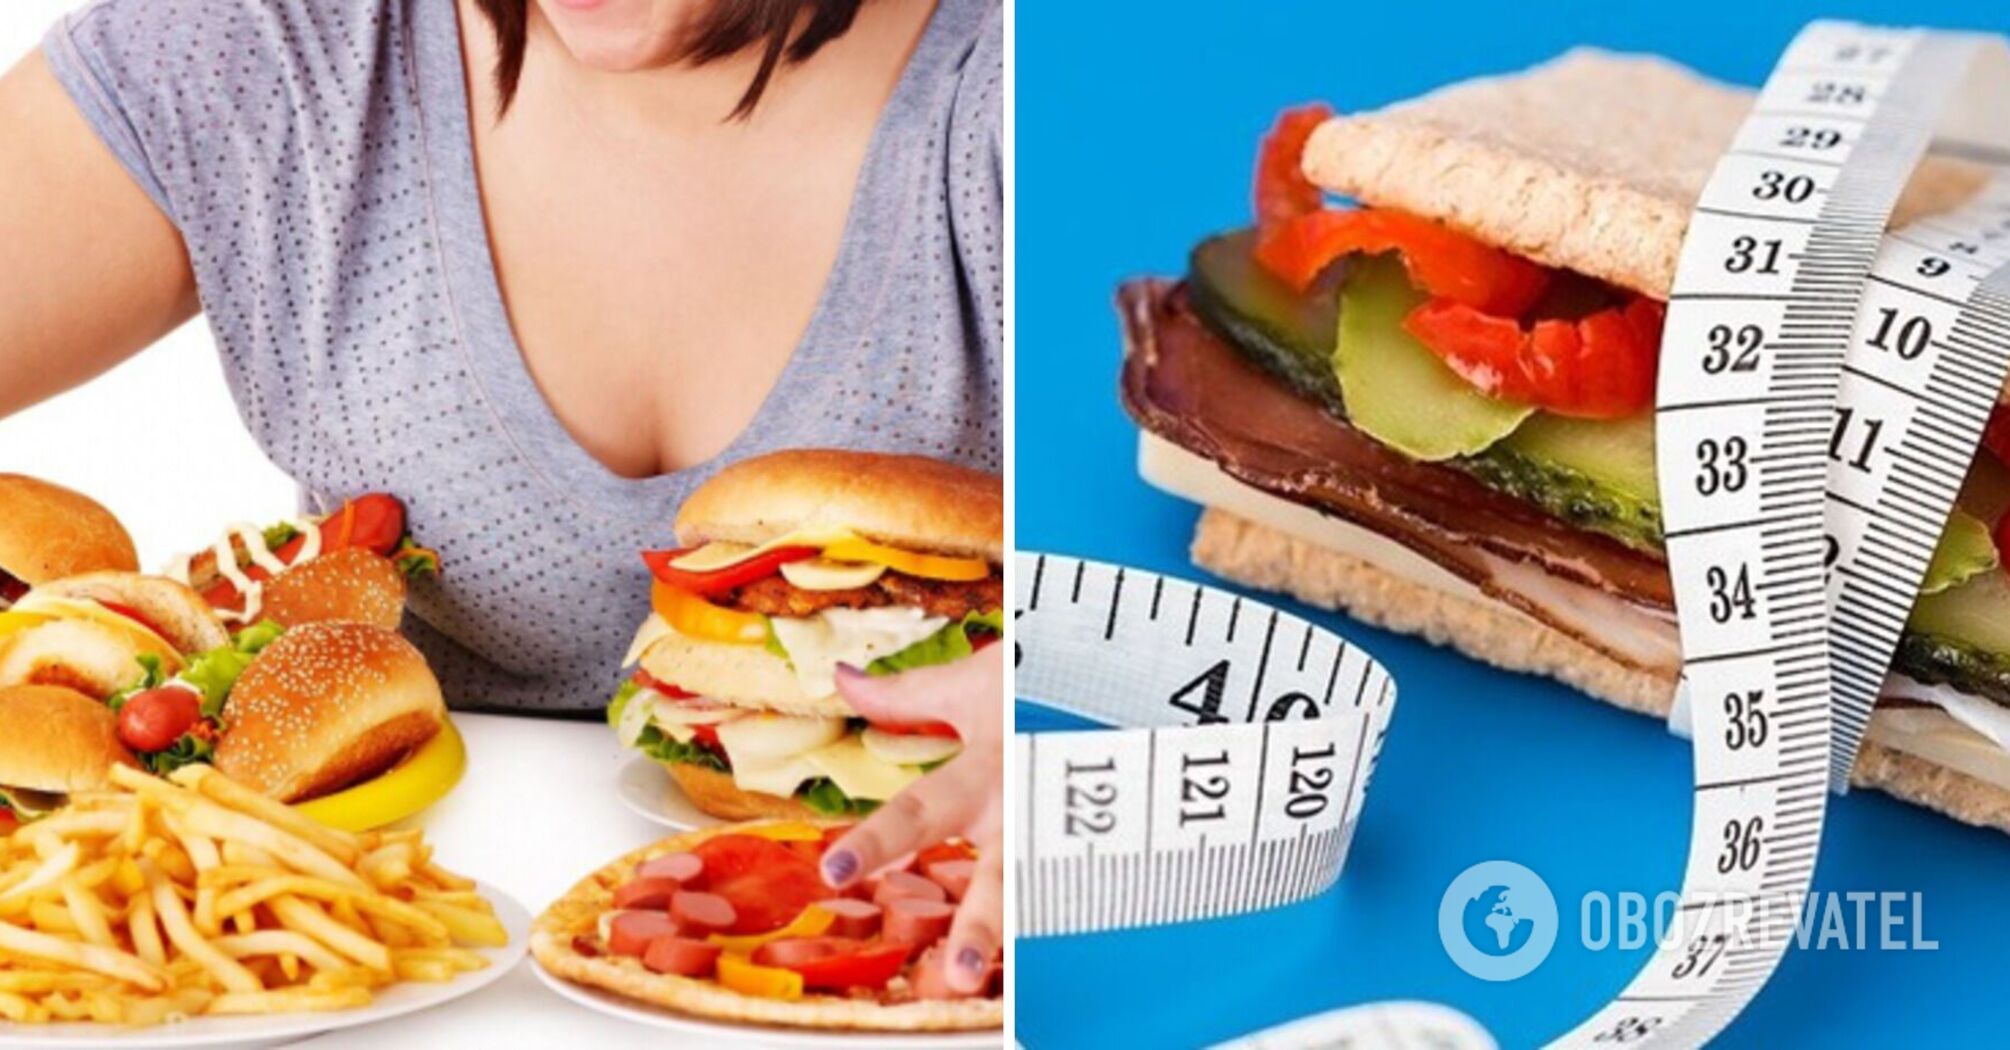 Siedem powodów przejadania się: test do identyfikacji zaburzeń odżywiania